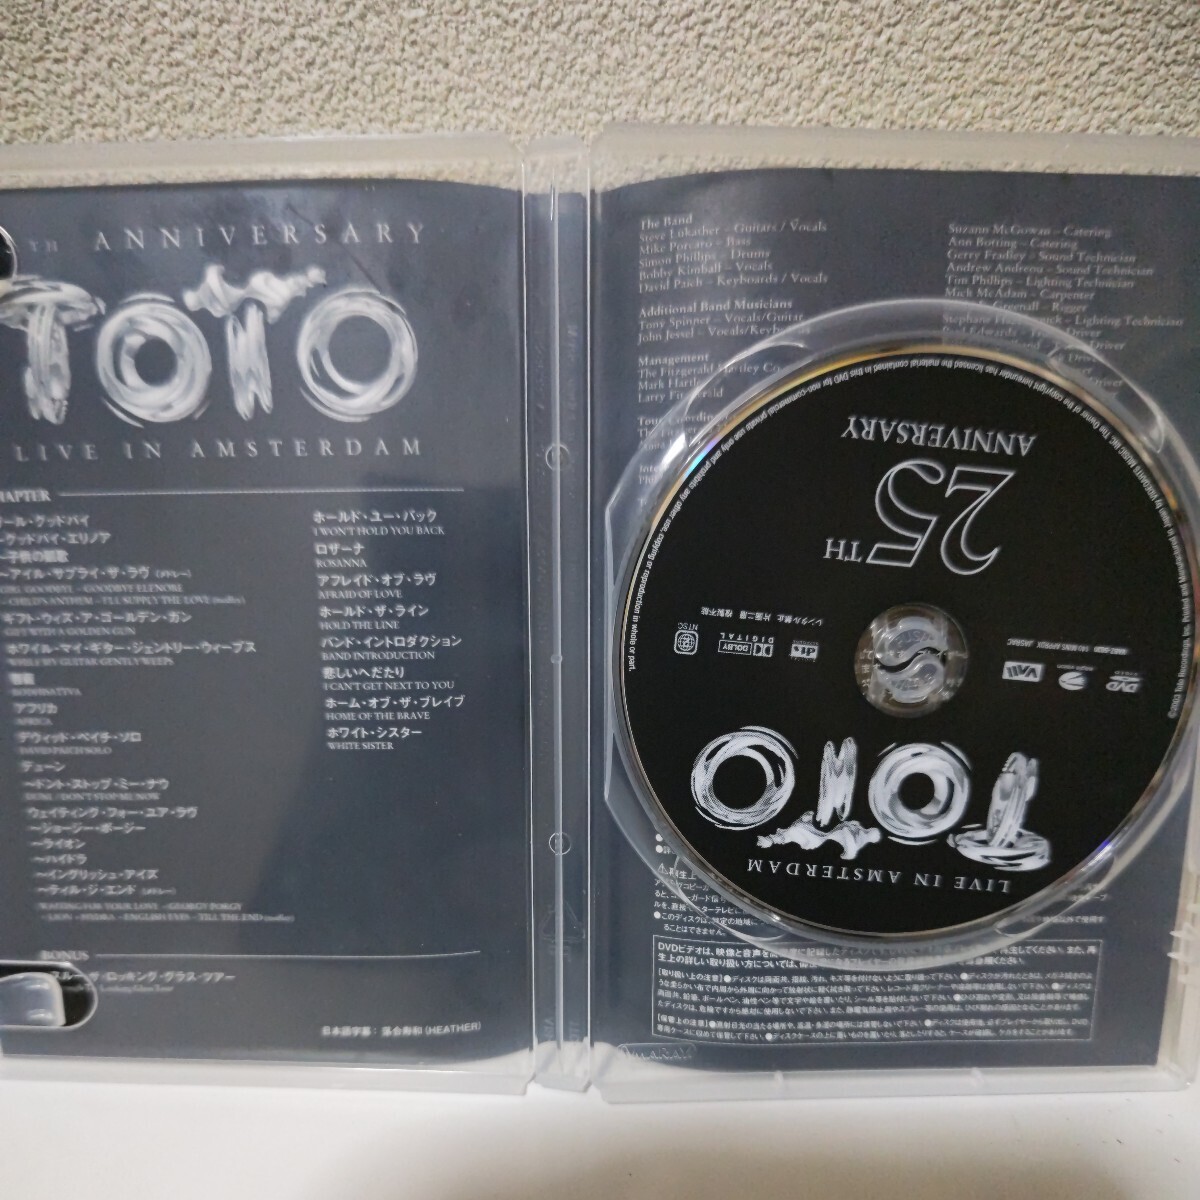 TOTO/ライヴ・イン・アムステルダム 国内盤DVD スティーヴ・ルカサー ボビー・キンボール サイモン・フィリップスの画像4